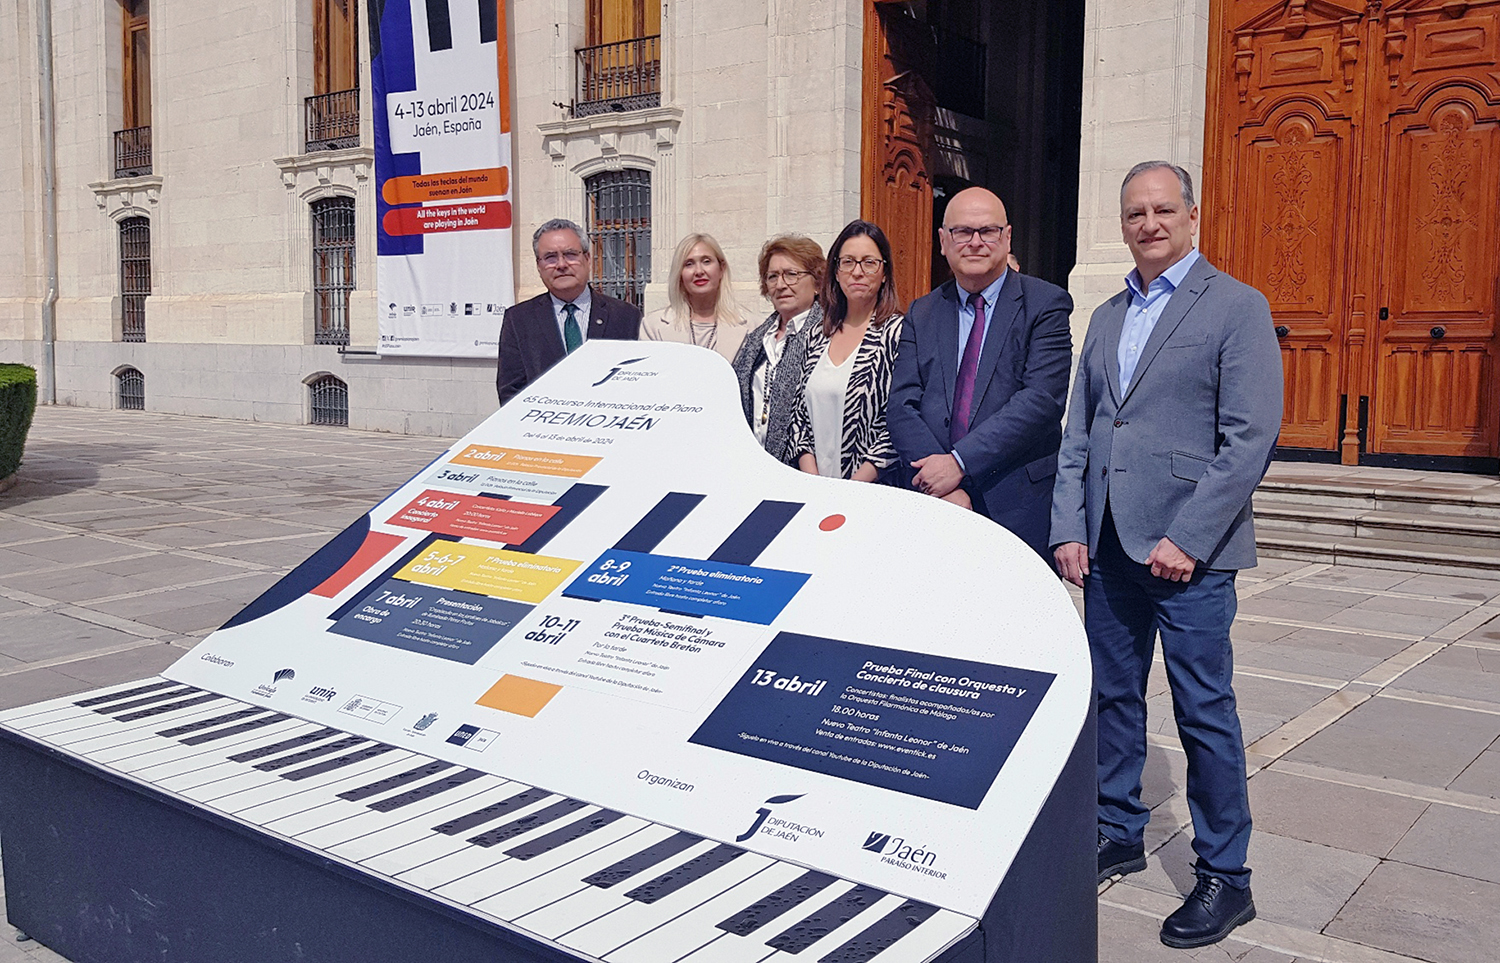 Presentada la 65 edición del Premio de Piano “Jaén” de la Diputación para el que se han inscrito un total de 98 intérpretes de 23 países